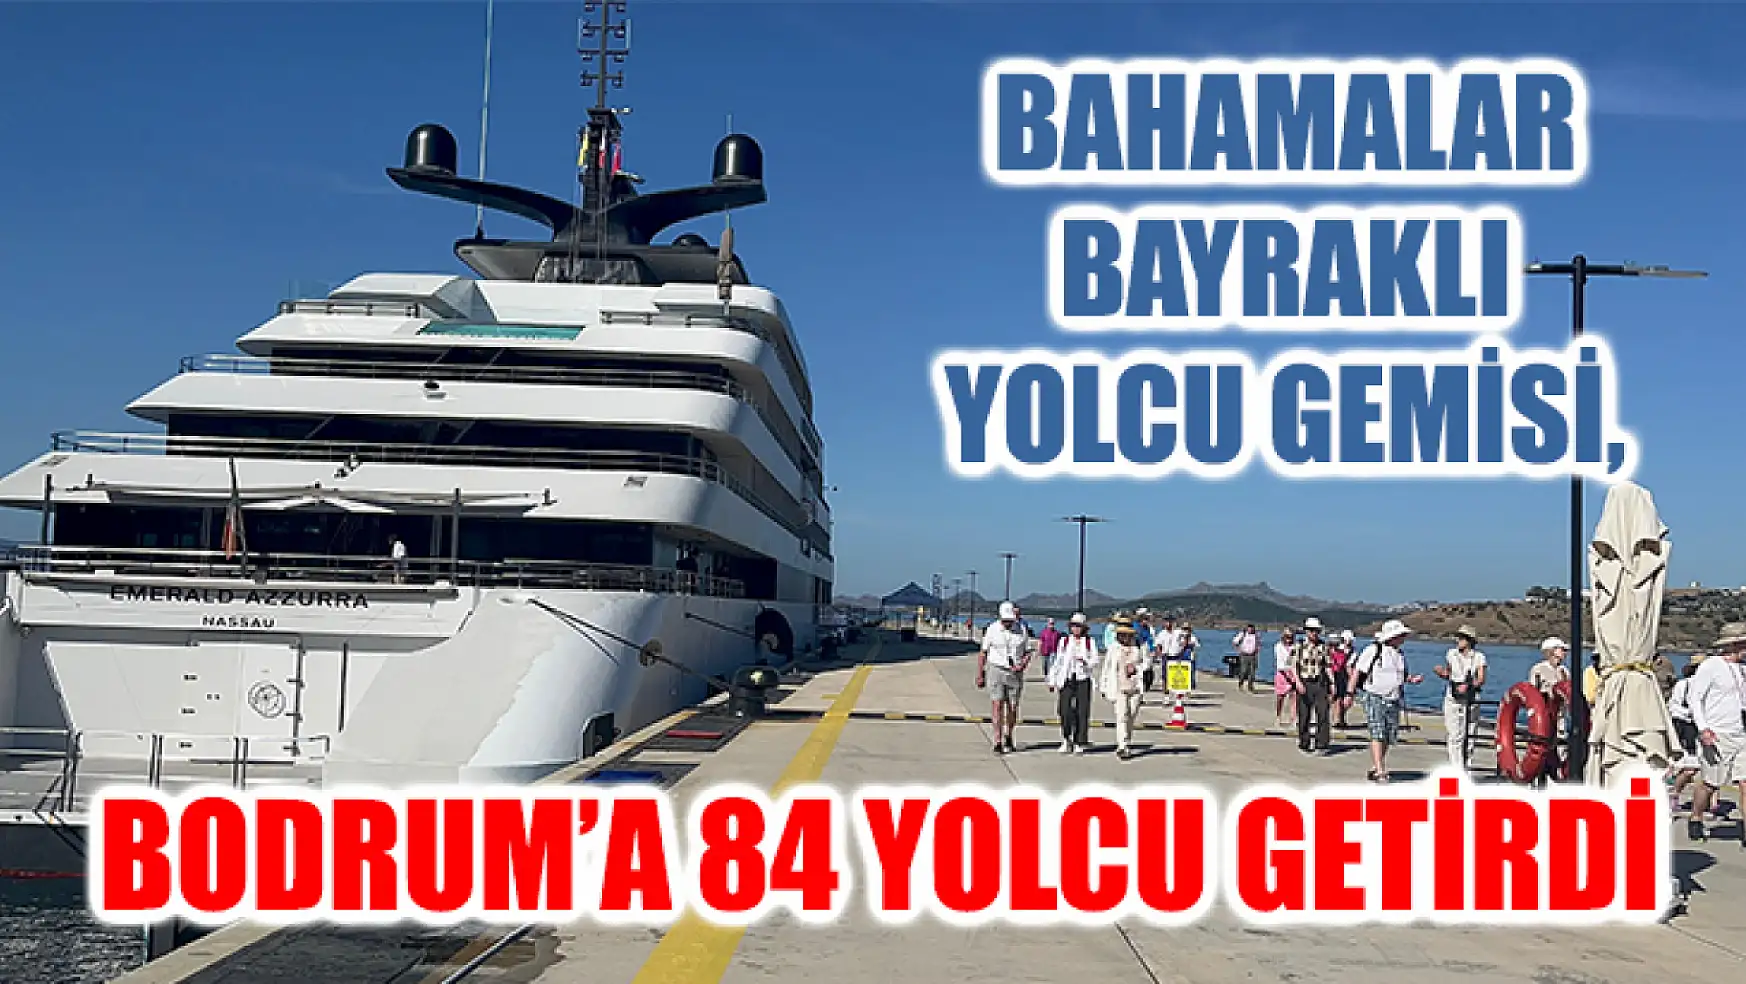 Bahamalar Bayraklı Yolcu Gemisi, Bodrum'a 84 Yolcu Getirdi